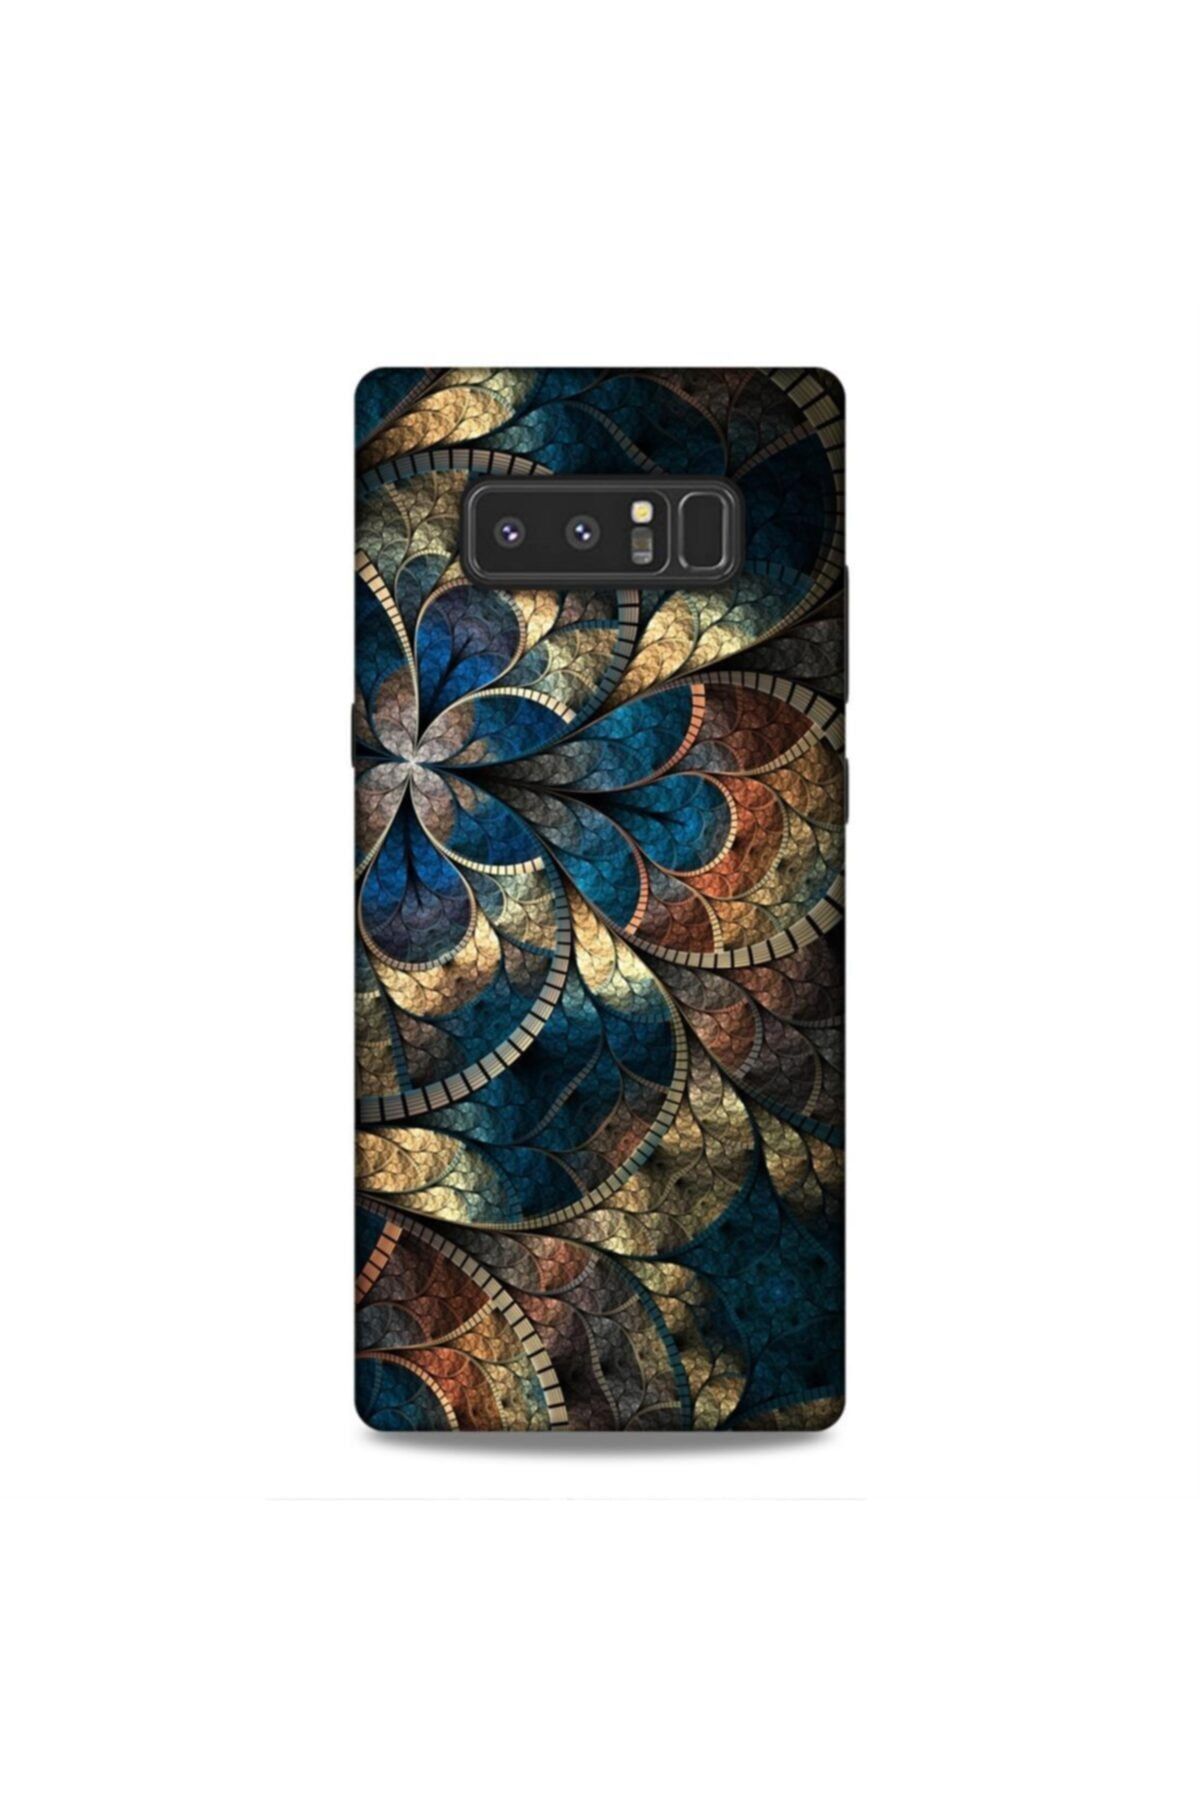 Pickcase Samsung Galaxy Note 8 Kılıf Desenli Arka Kapak Koyu Desenler